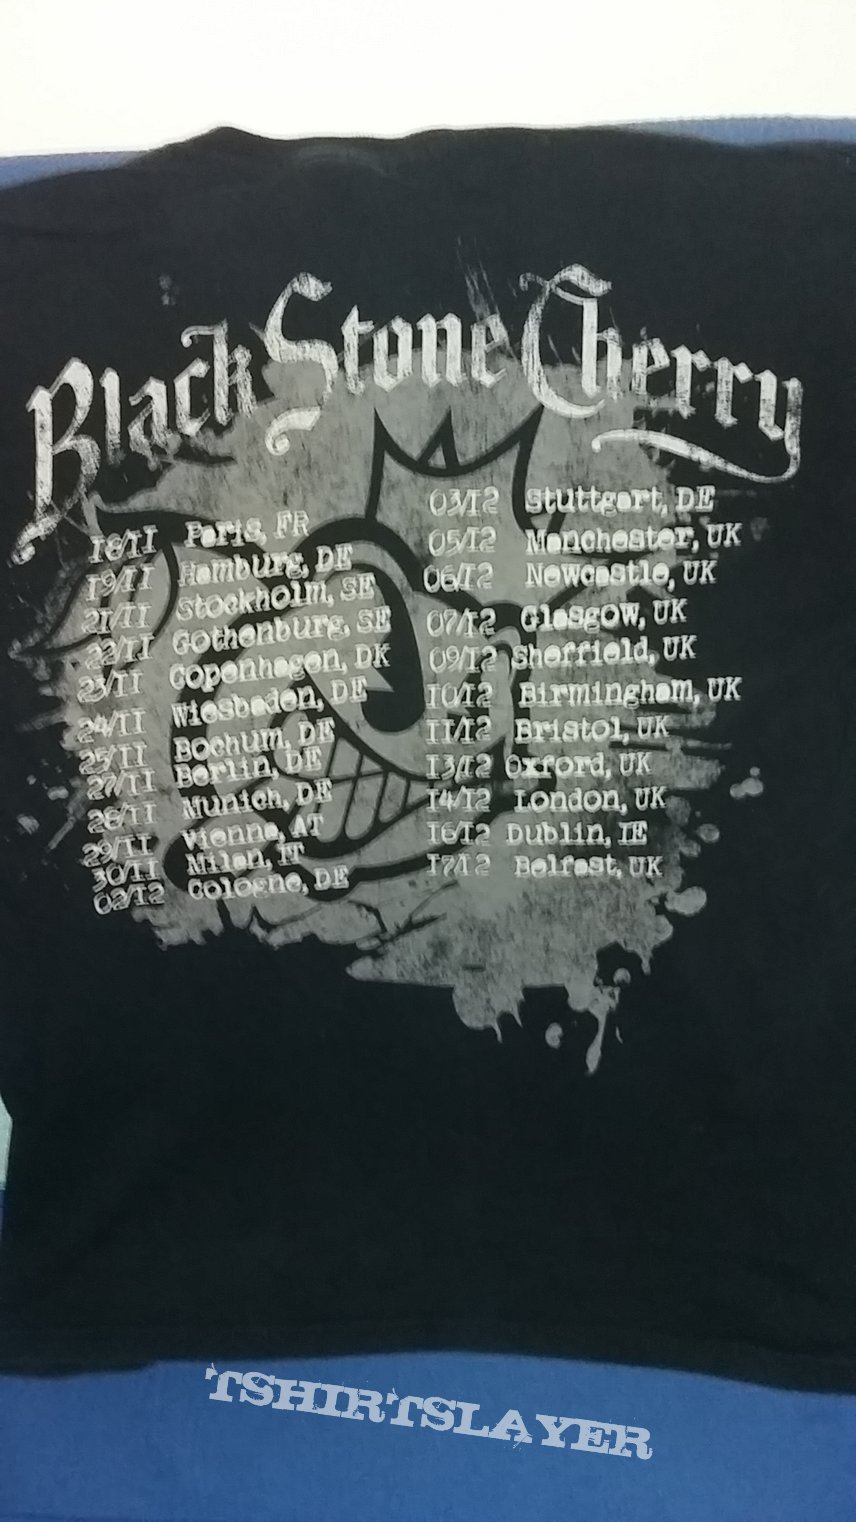 Black Stone Cherry - European Tour 2008